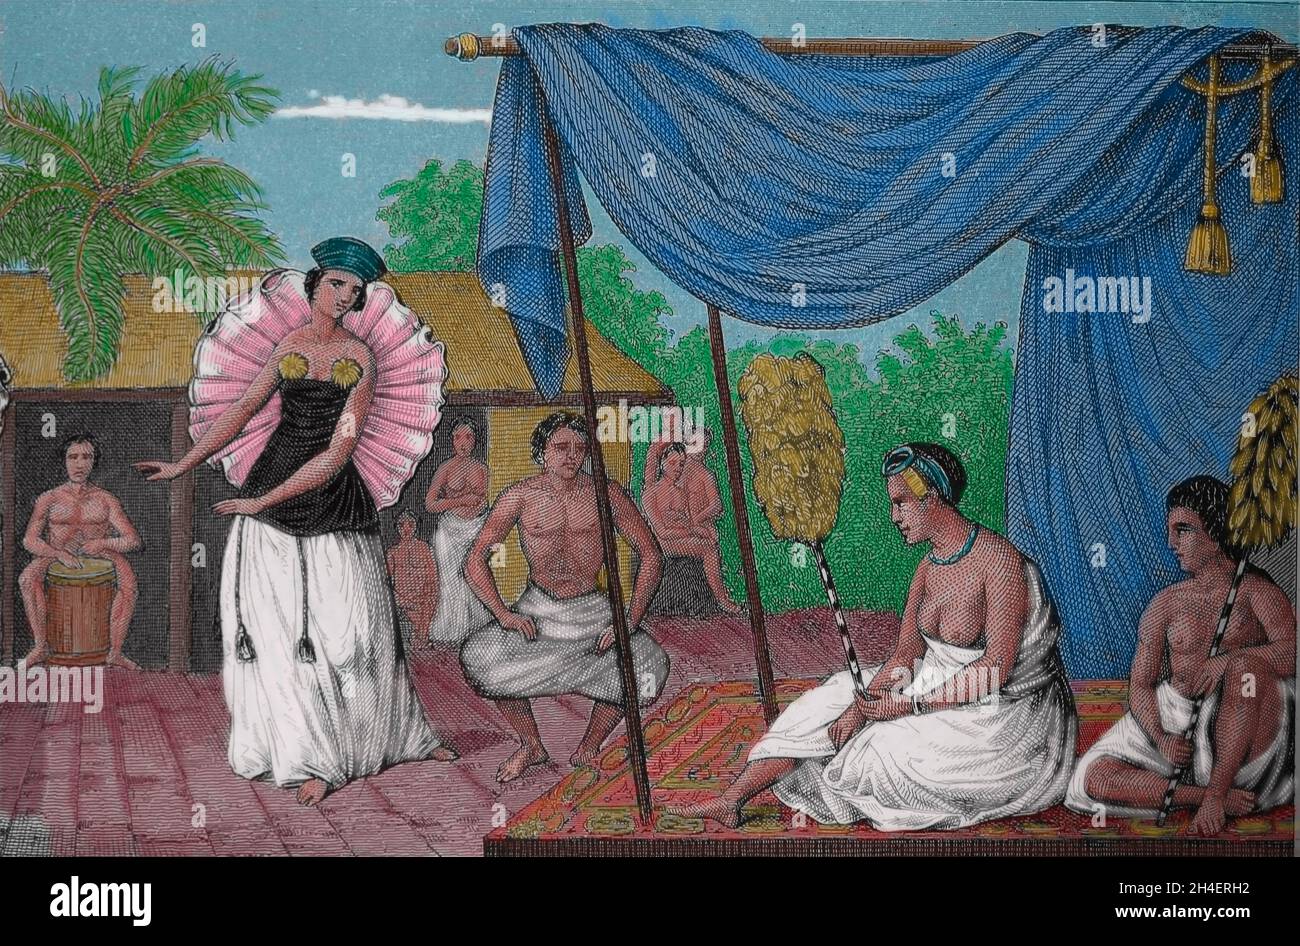 Îles de la société.Tahiti.Fille dansante.Gravure, 19e siècle. Banque D'Images